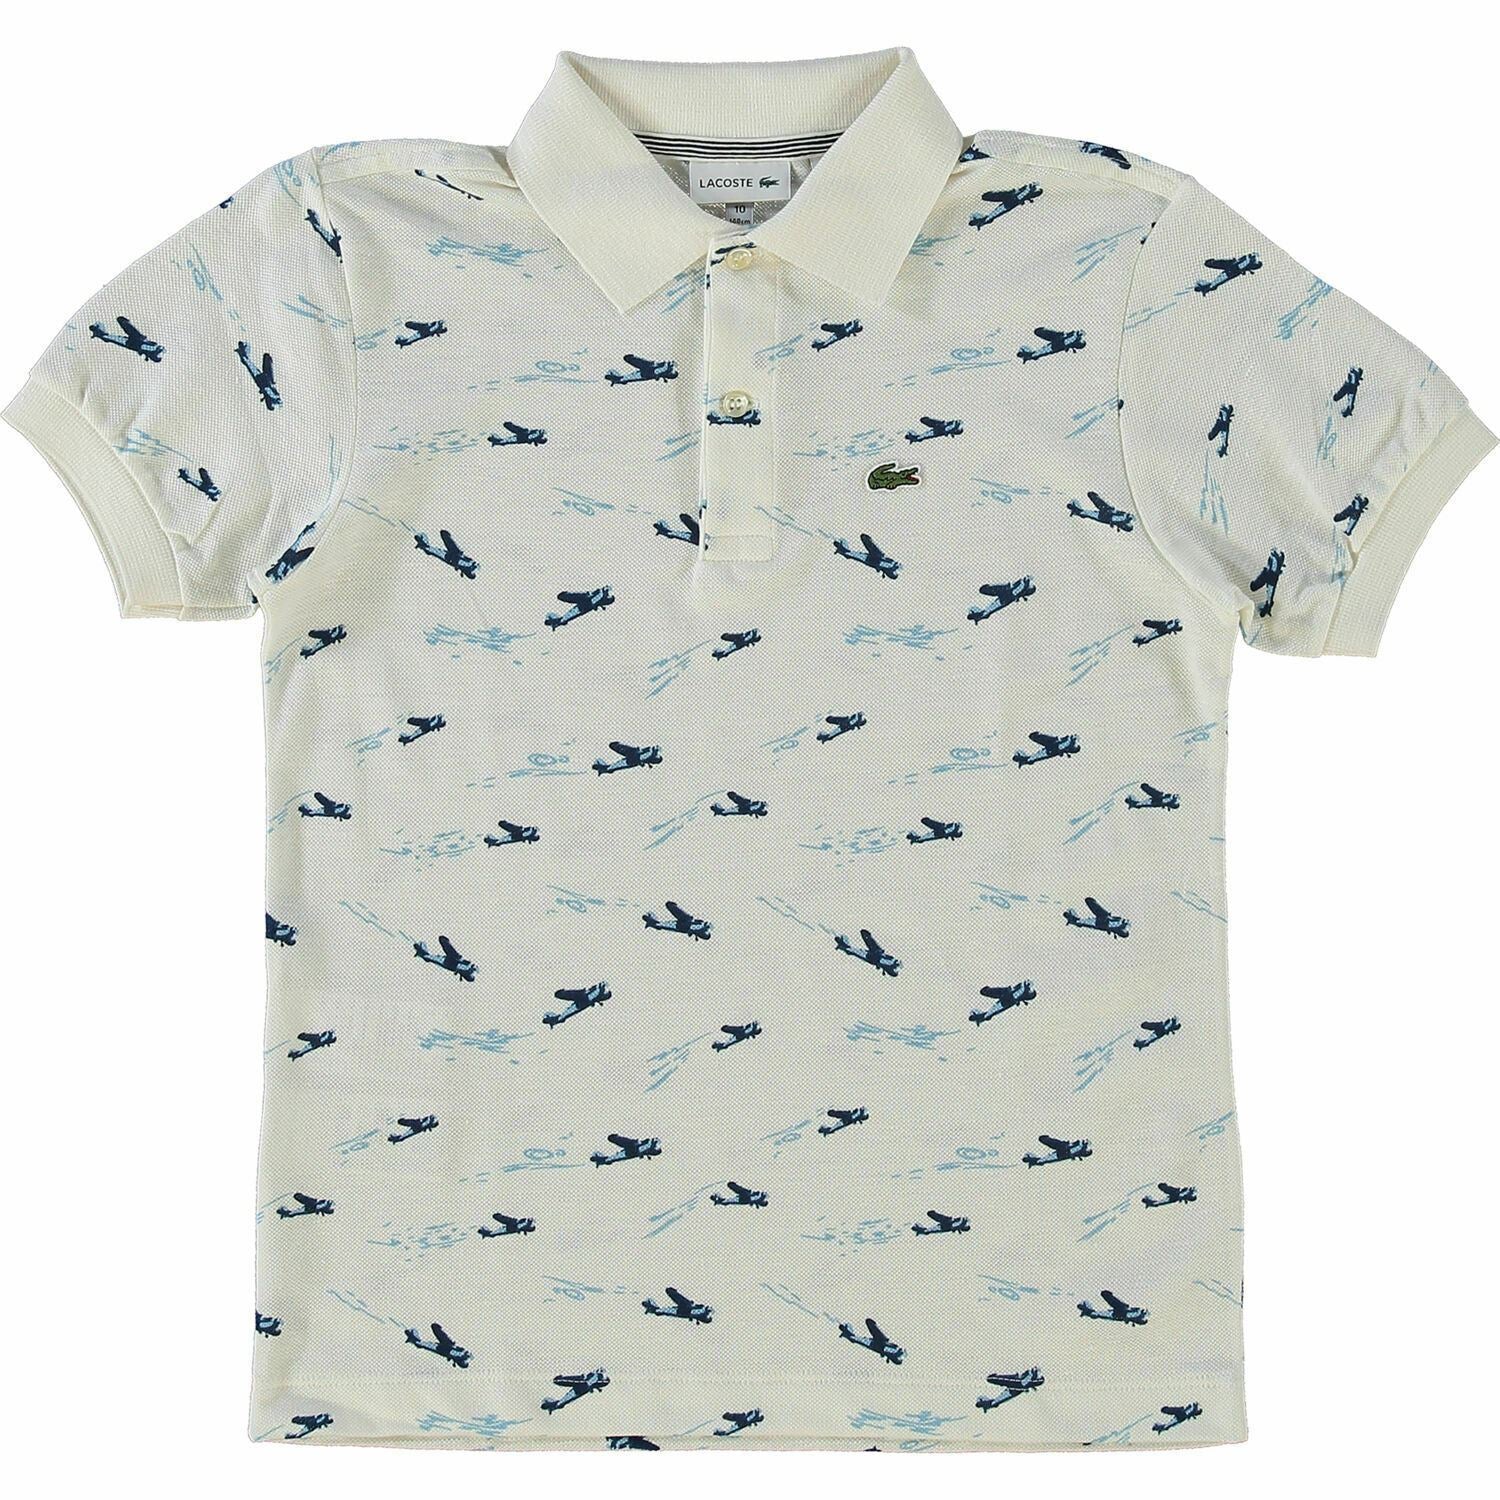 LACOSTE Boys' Kids' Linen Blend Polo Shirt, White/Blue Aeroplane Print, 10 years